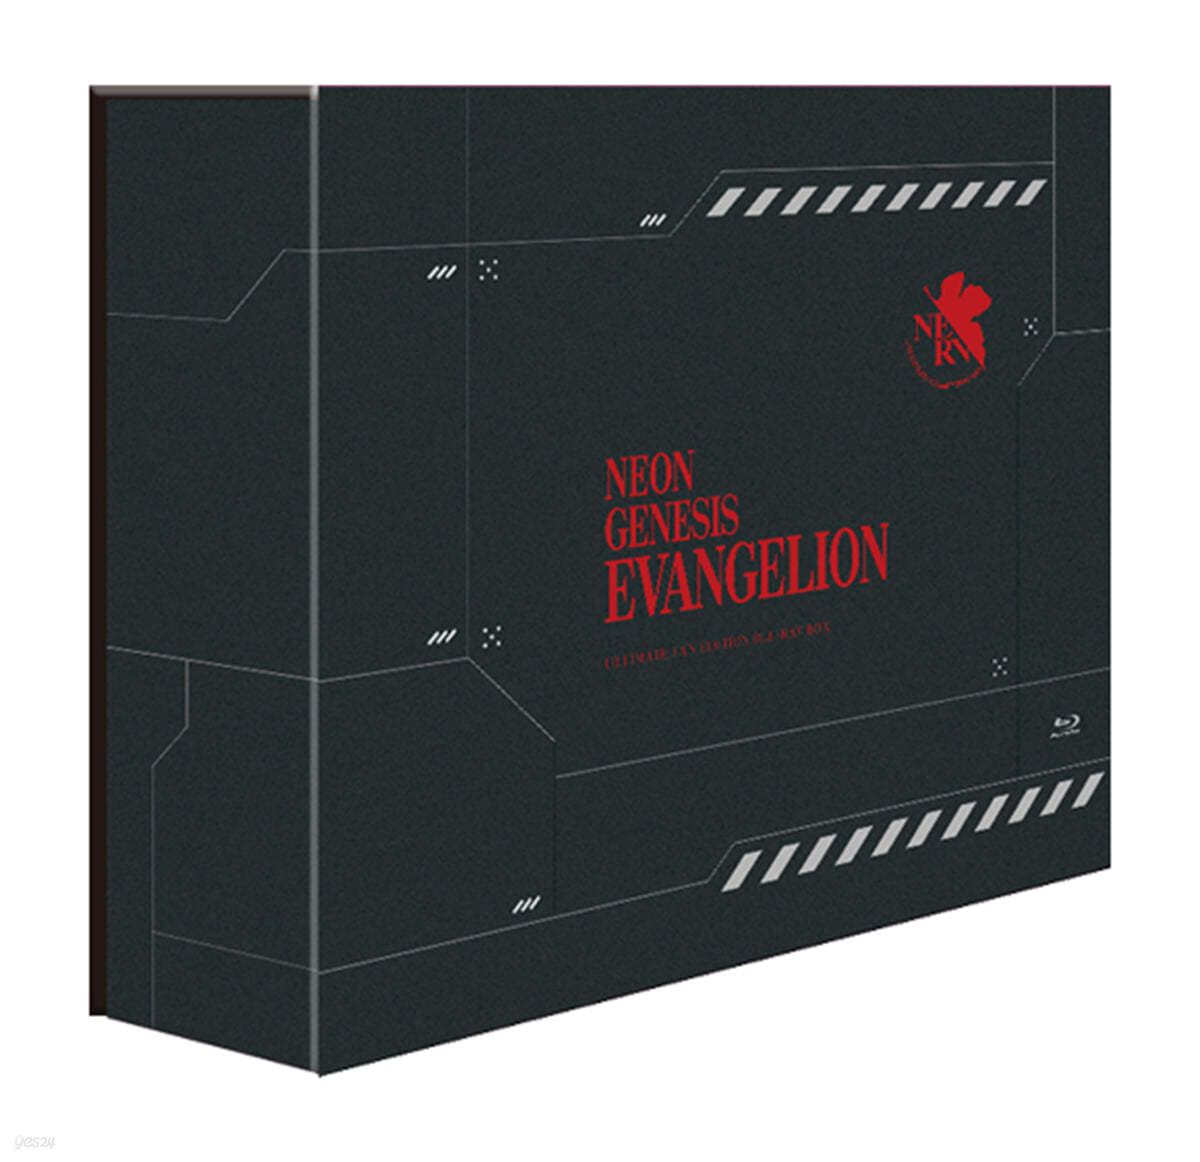 신세기 에반게리온 TV시리즈 + 극장판 Evangelion:Death (True)&#178; + 극장판 The End Of Evangelion + 우리말 녹음포함 얼티밋 팬 에디션(19th ULTIMATE FAN EDITION, 9Disc) : 블루레이